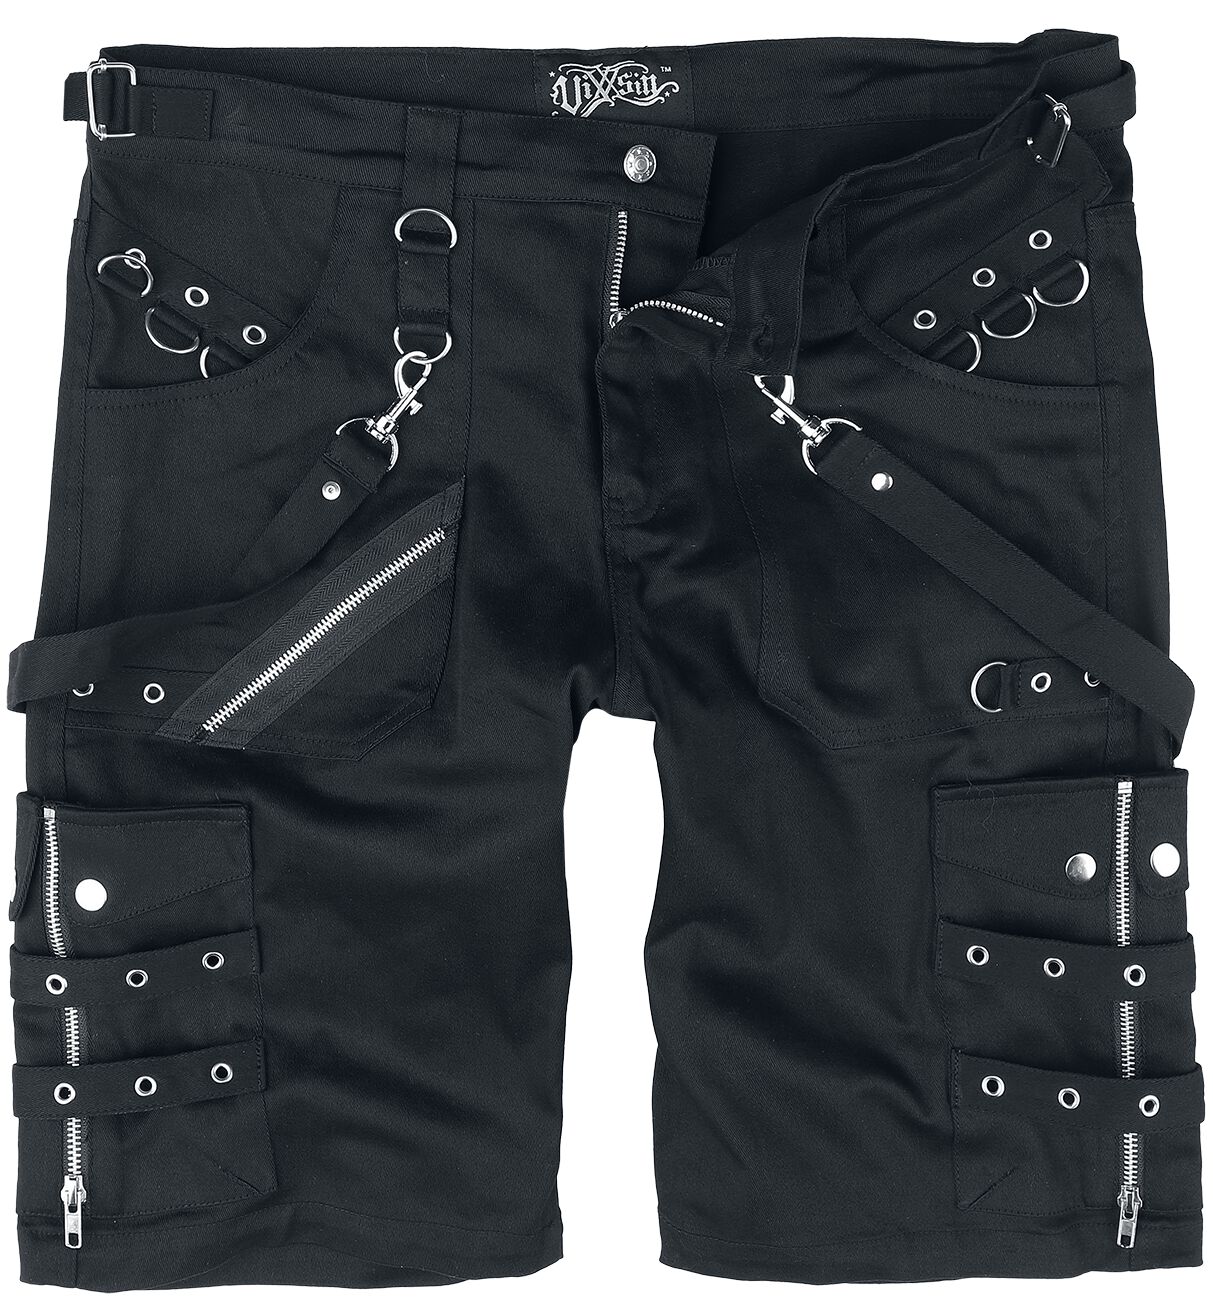 Vixxsin - Gothic Short - Edham Shorts - 30 bis 38 - für Männer - Größe 38 - schwarz